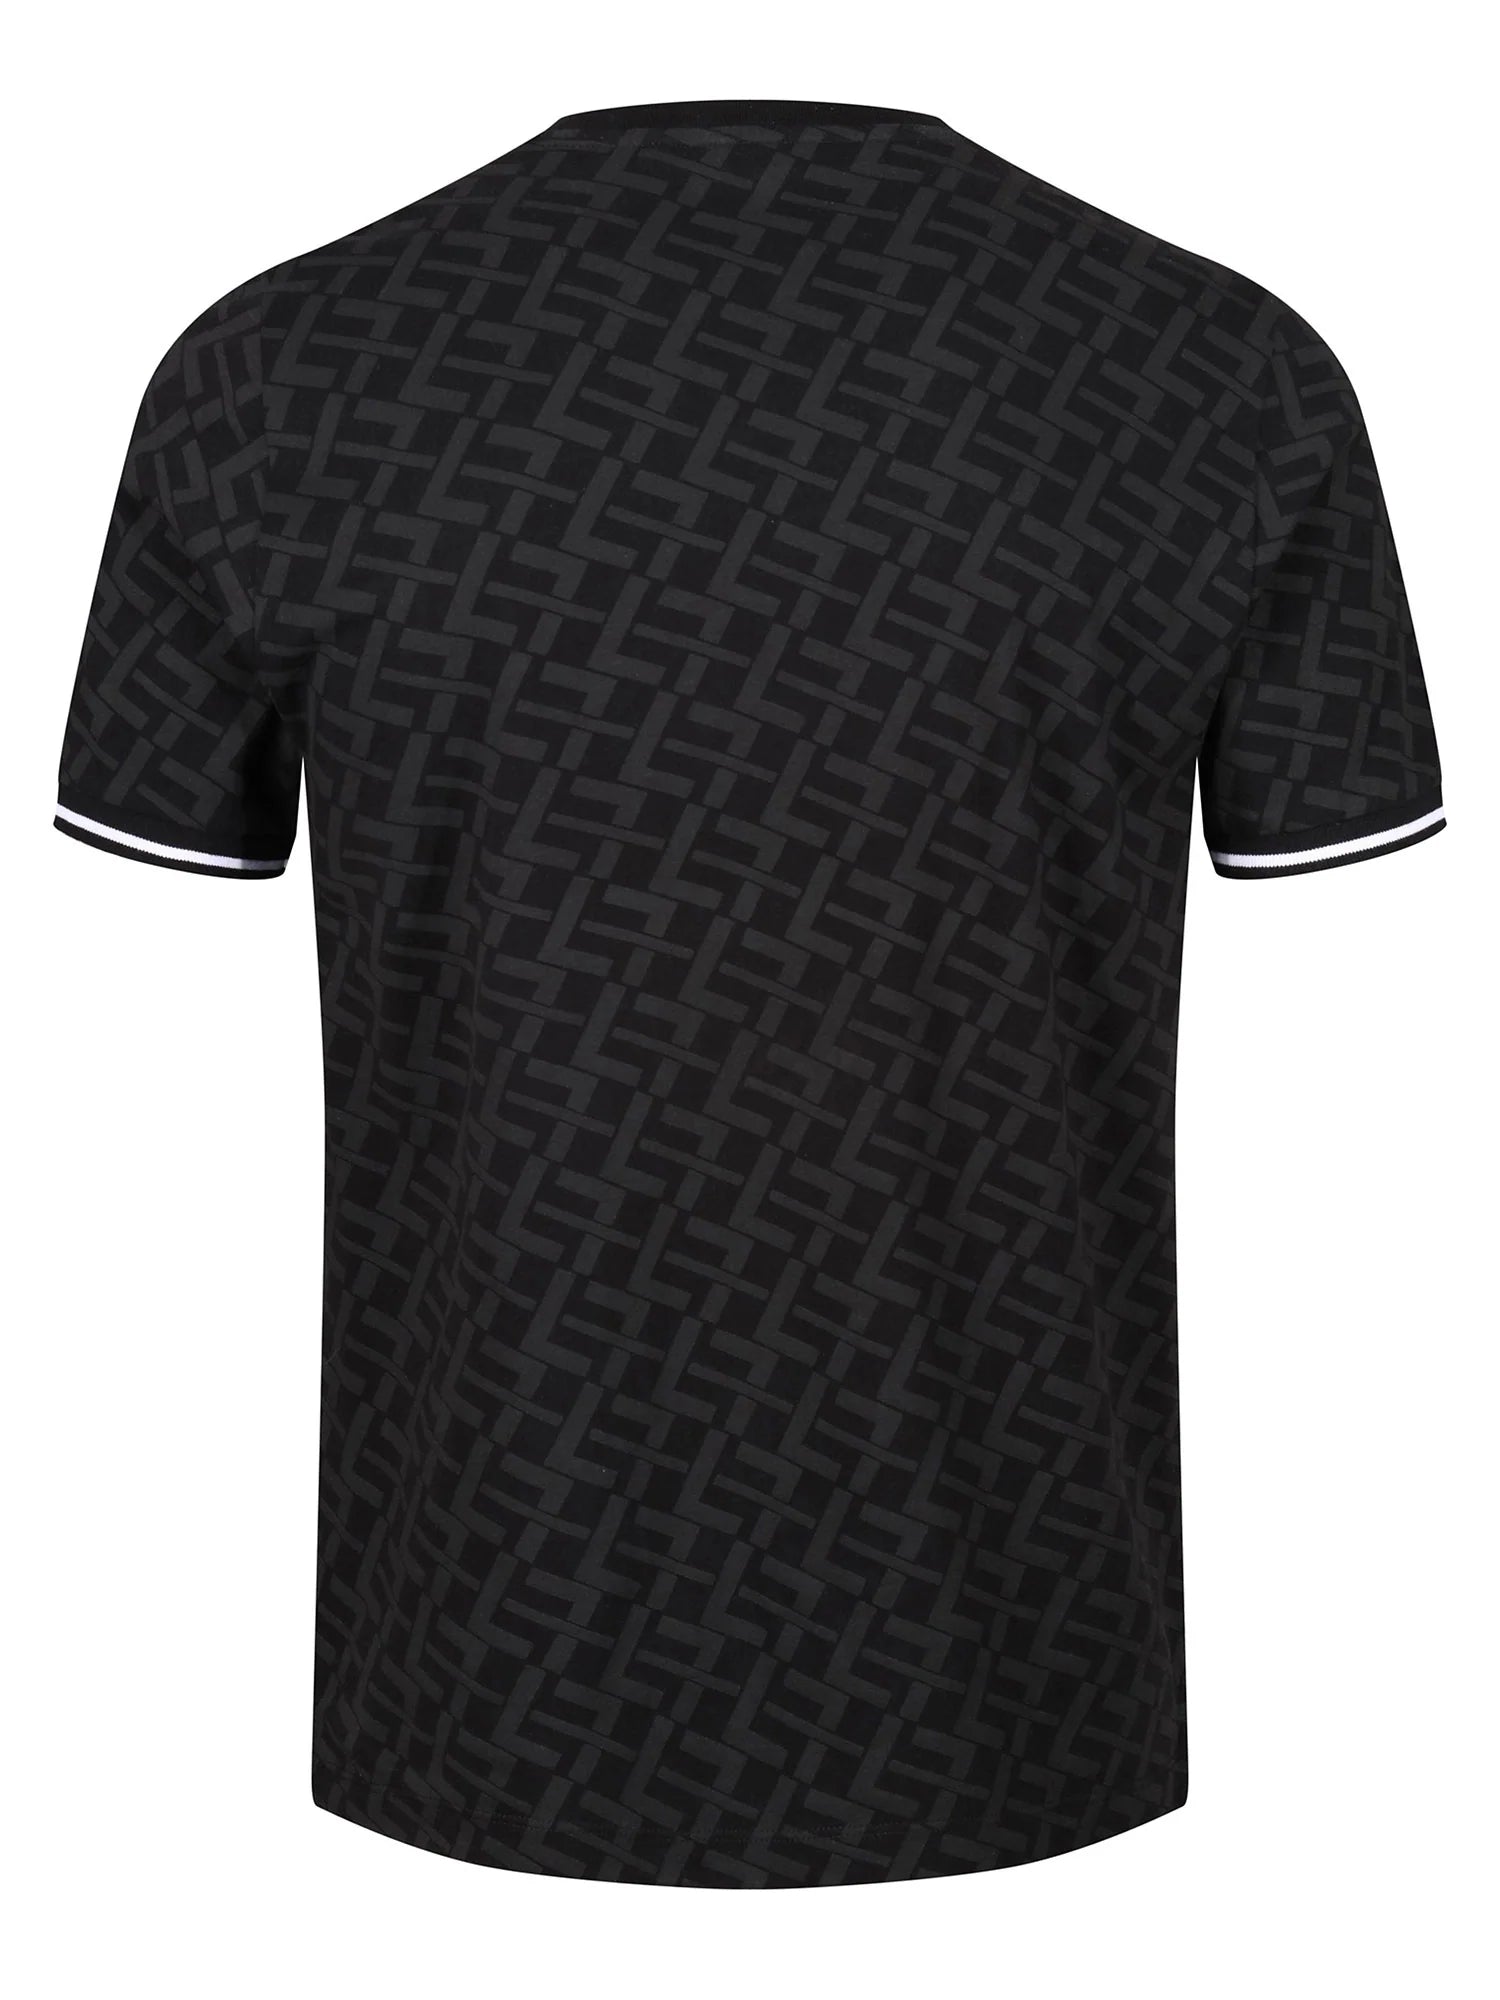 Luke Shireoak T-Shirt Black